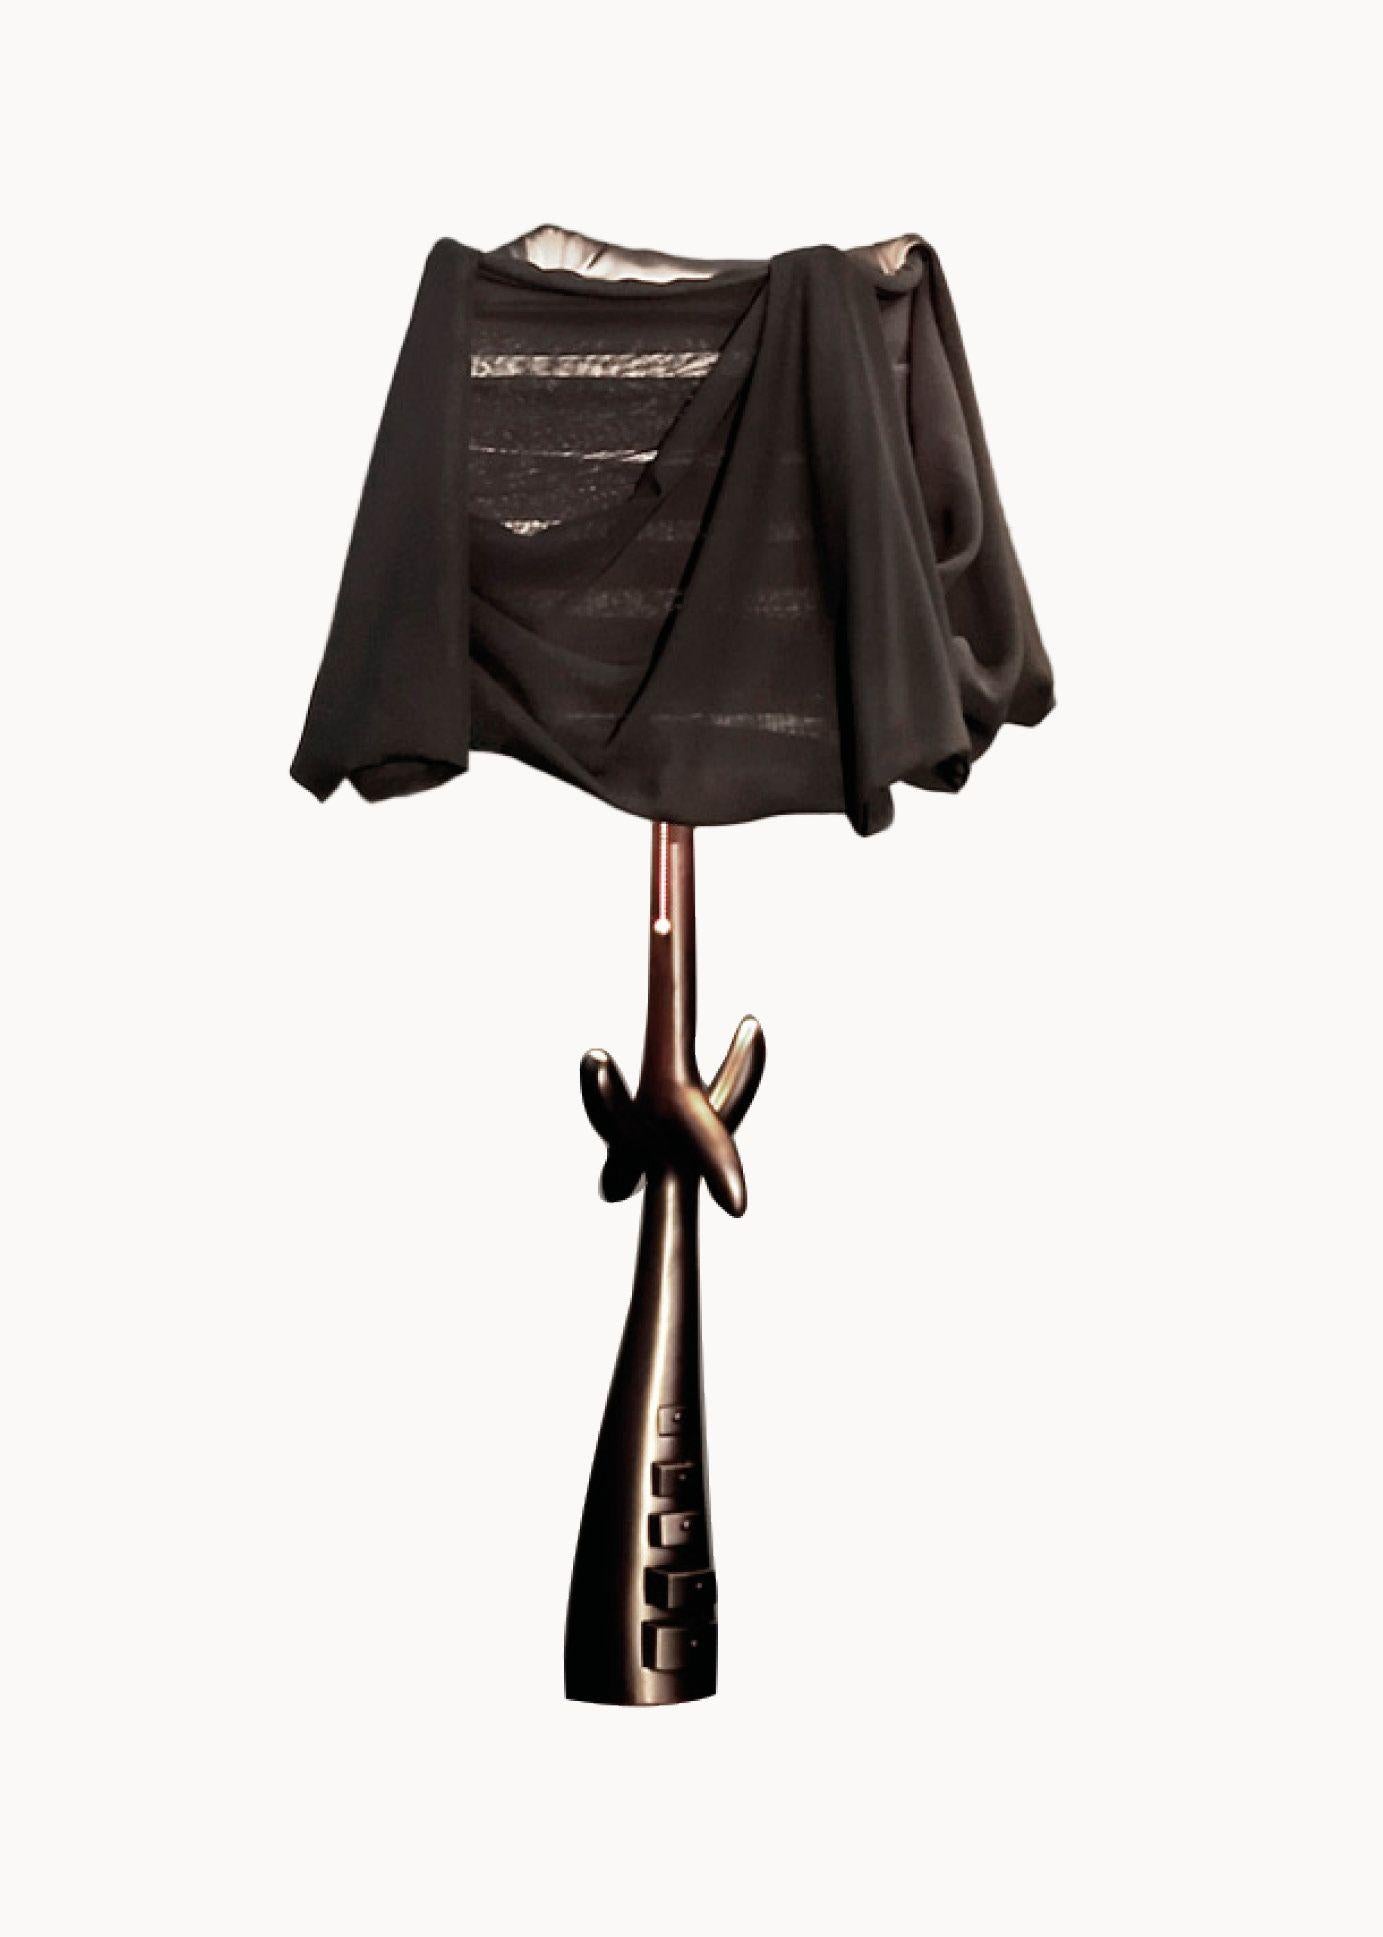 Schubladenlampe, entworfen von Dali, hergestellt von BD.

Geschnitzte Struktur aus schwarz lackiertem Lindenholz.
Lampenschirm aus schwarzem Leinen.

Die Black Label Kollektion kam in einer limitierten Auflage von 105 Stück auf den Markt (das Alter